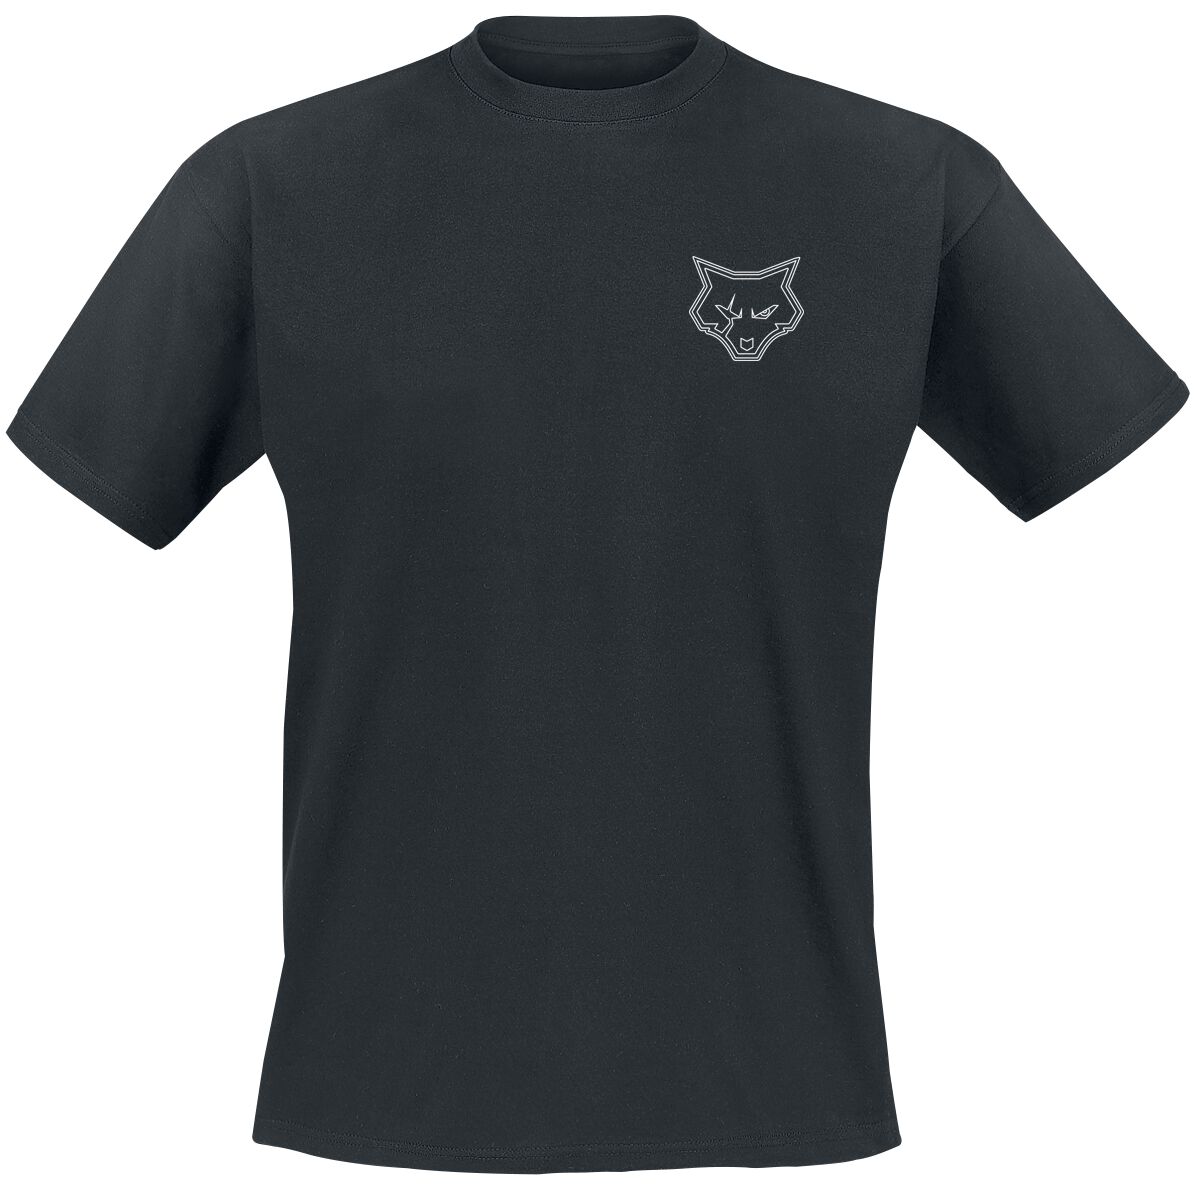 Bad Wolves T-Shirt - Bad F*cking Wolves - S bis 4XL - für Männer - Größe 3XL - schwarz  - Lizenziertes Merchandise!